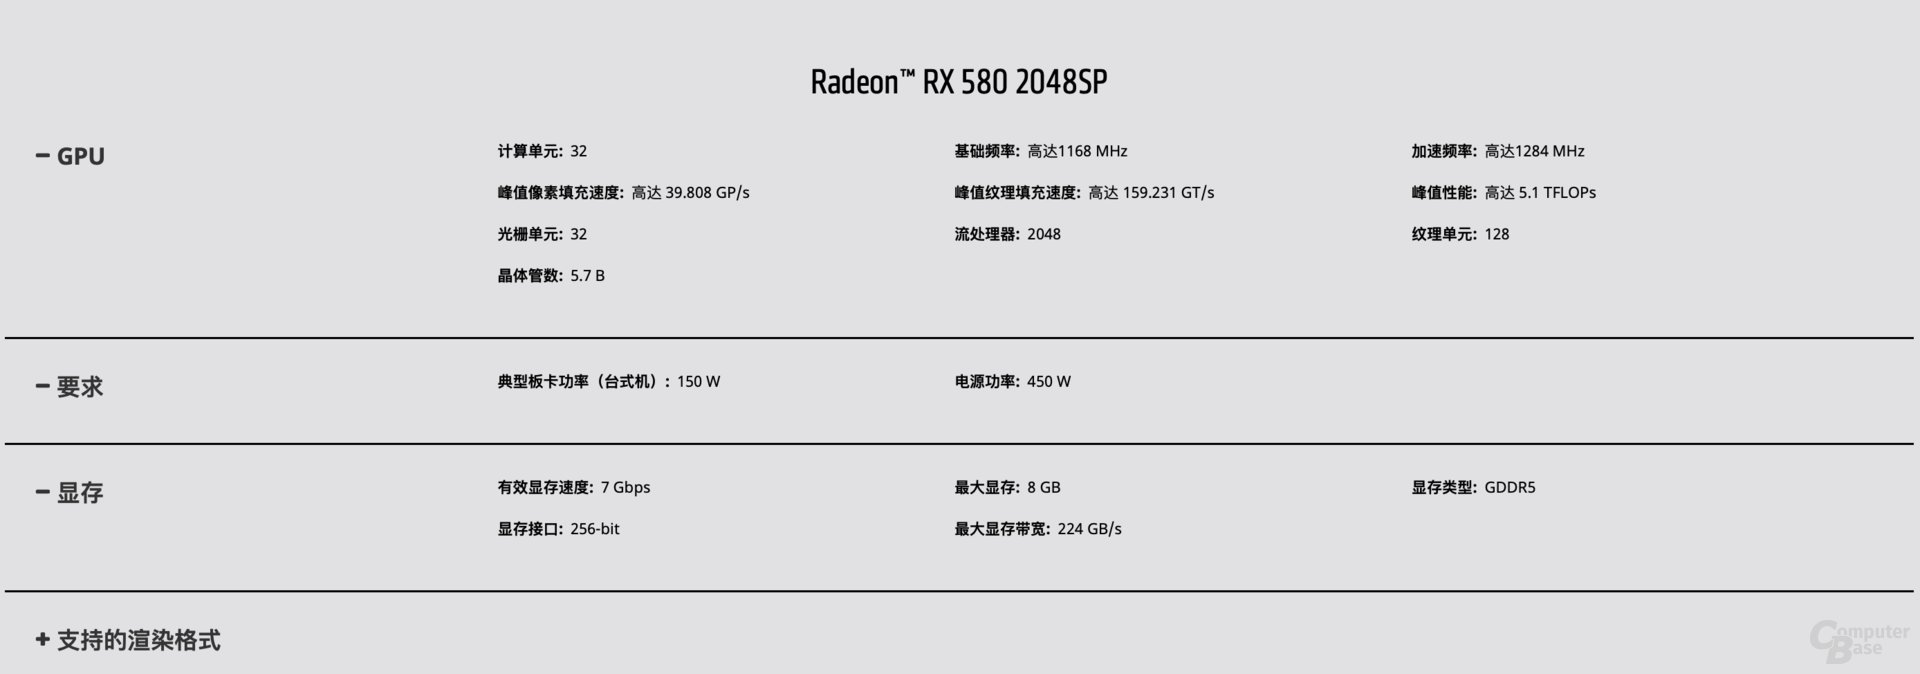 Die Radeon RX 580 2.048SP ist für China gedacht